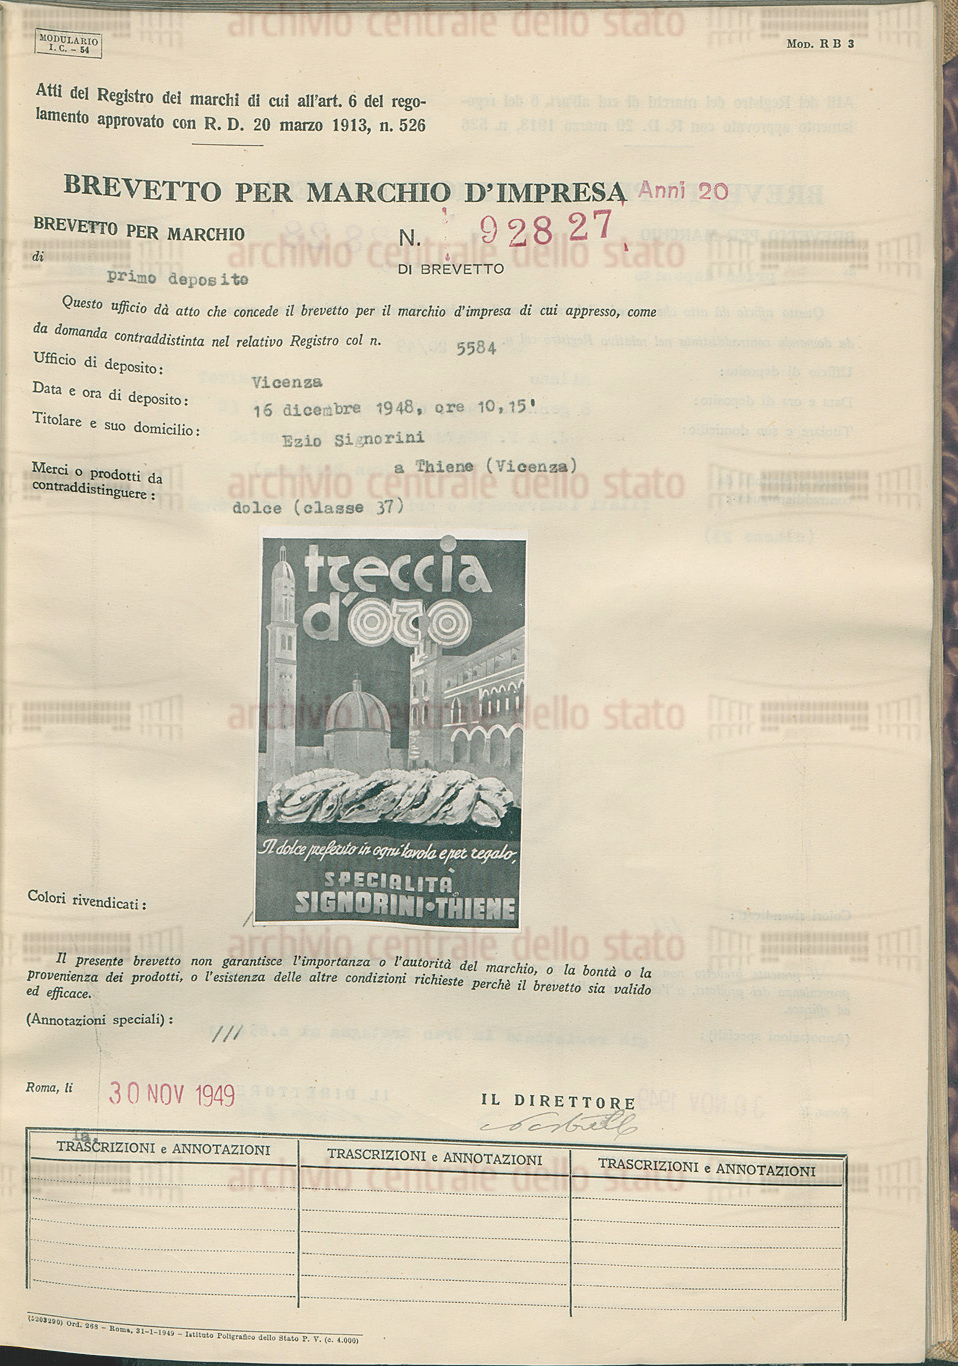 Treccia d'oro Signorini - Brevetto 1948